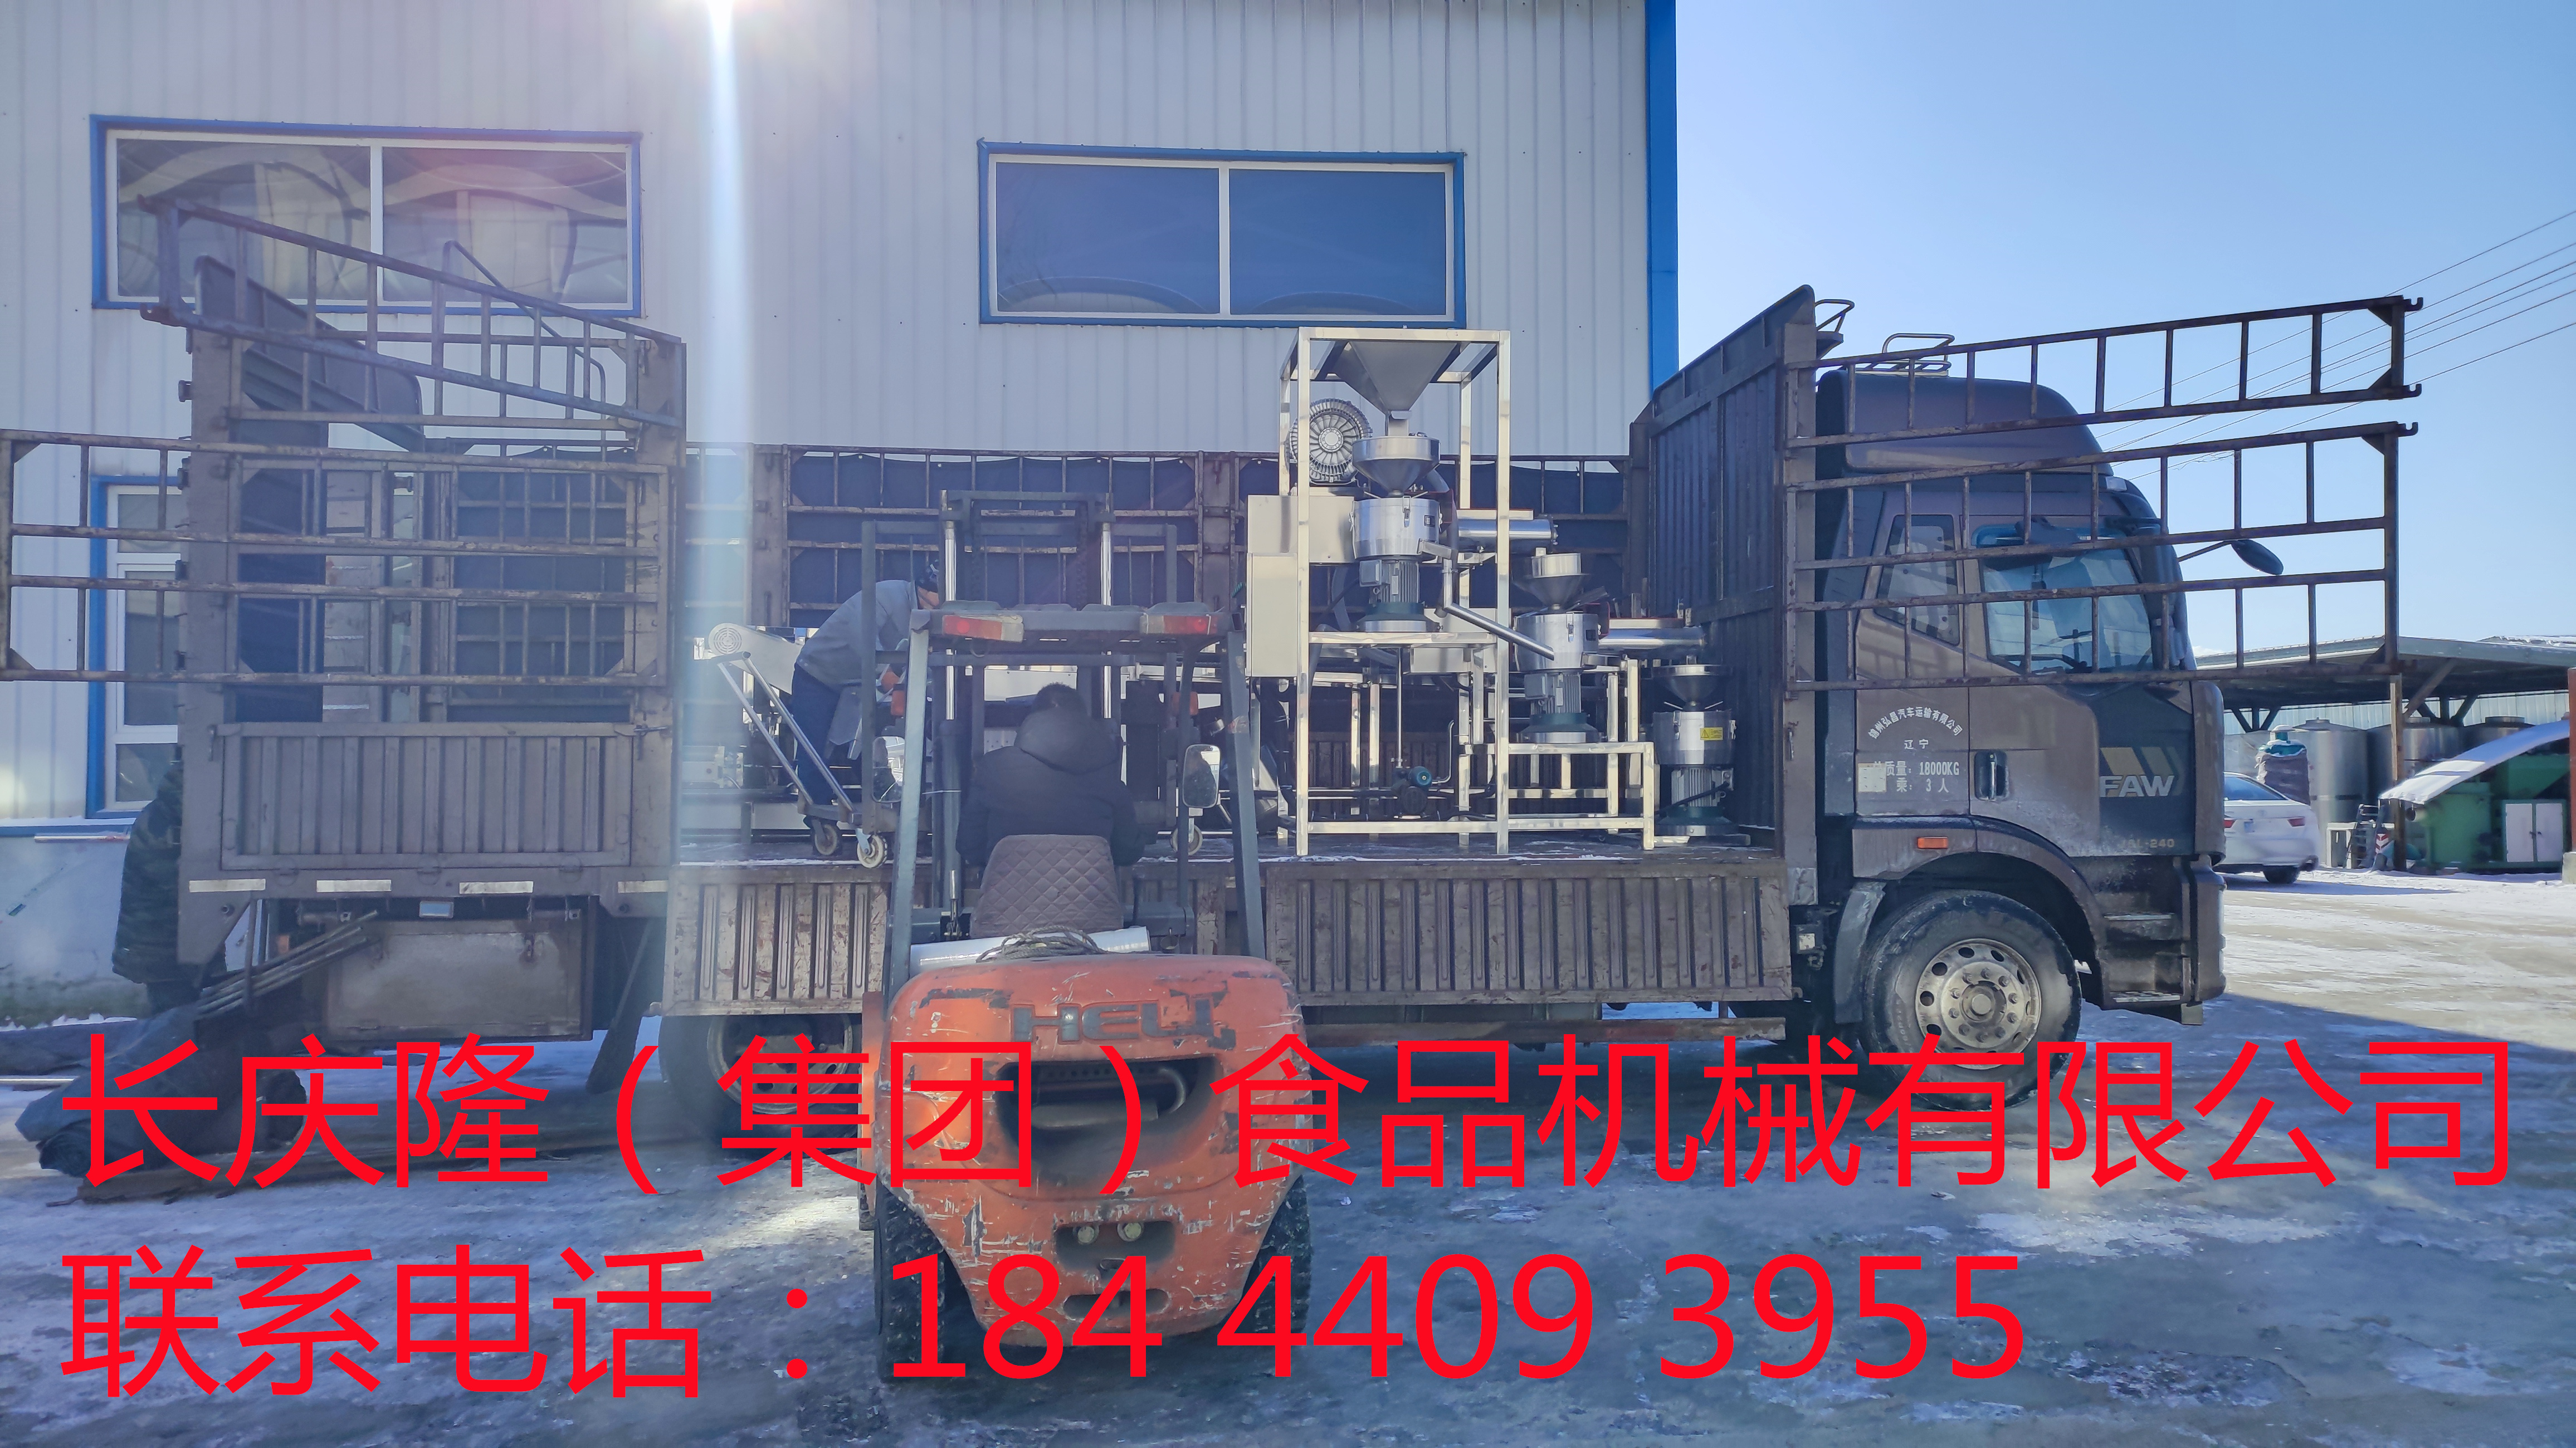 发往锦州的大型豆腐机设备装车发货 (7)_副本.jpg